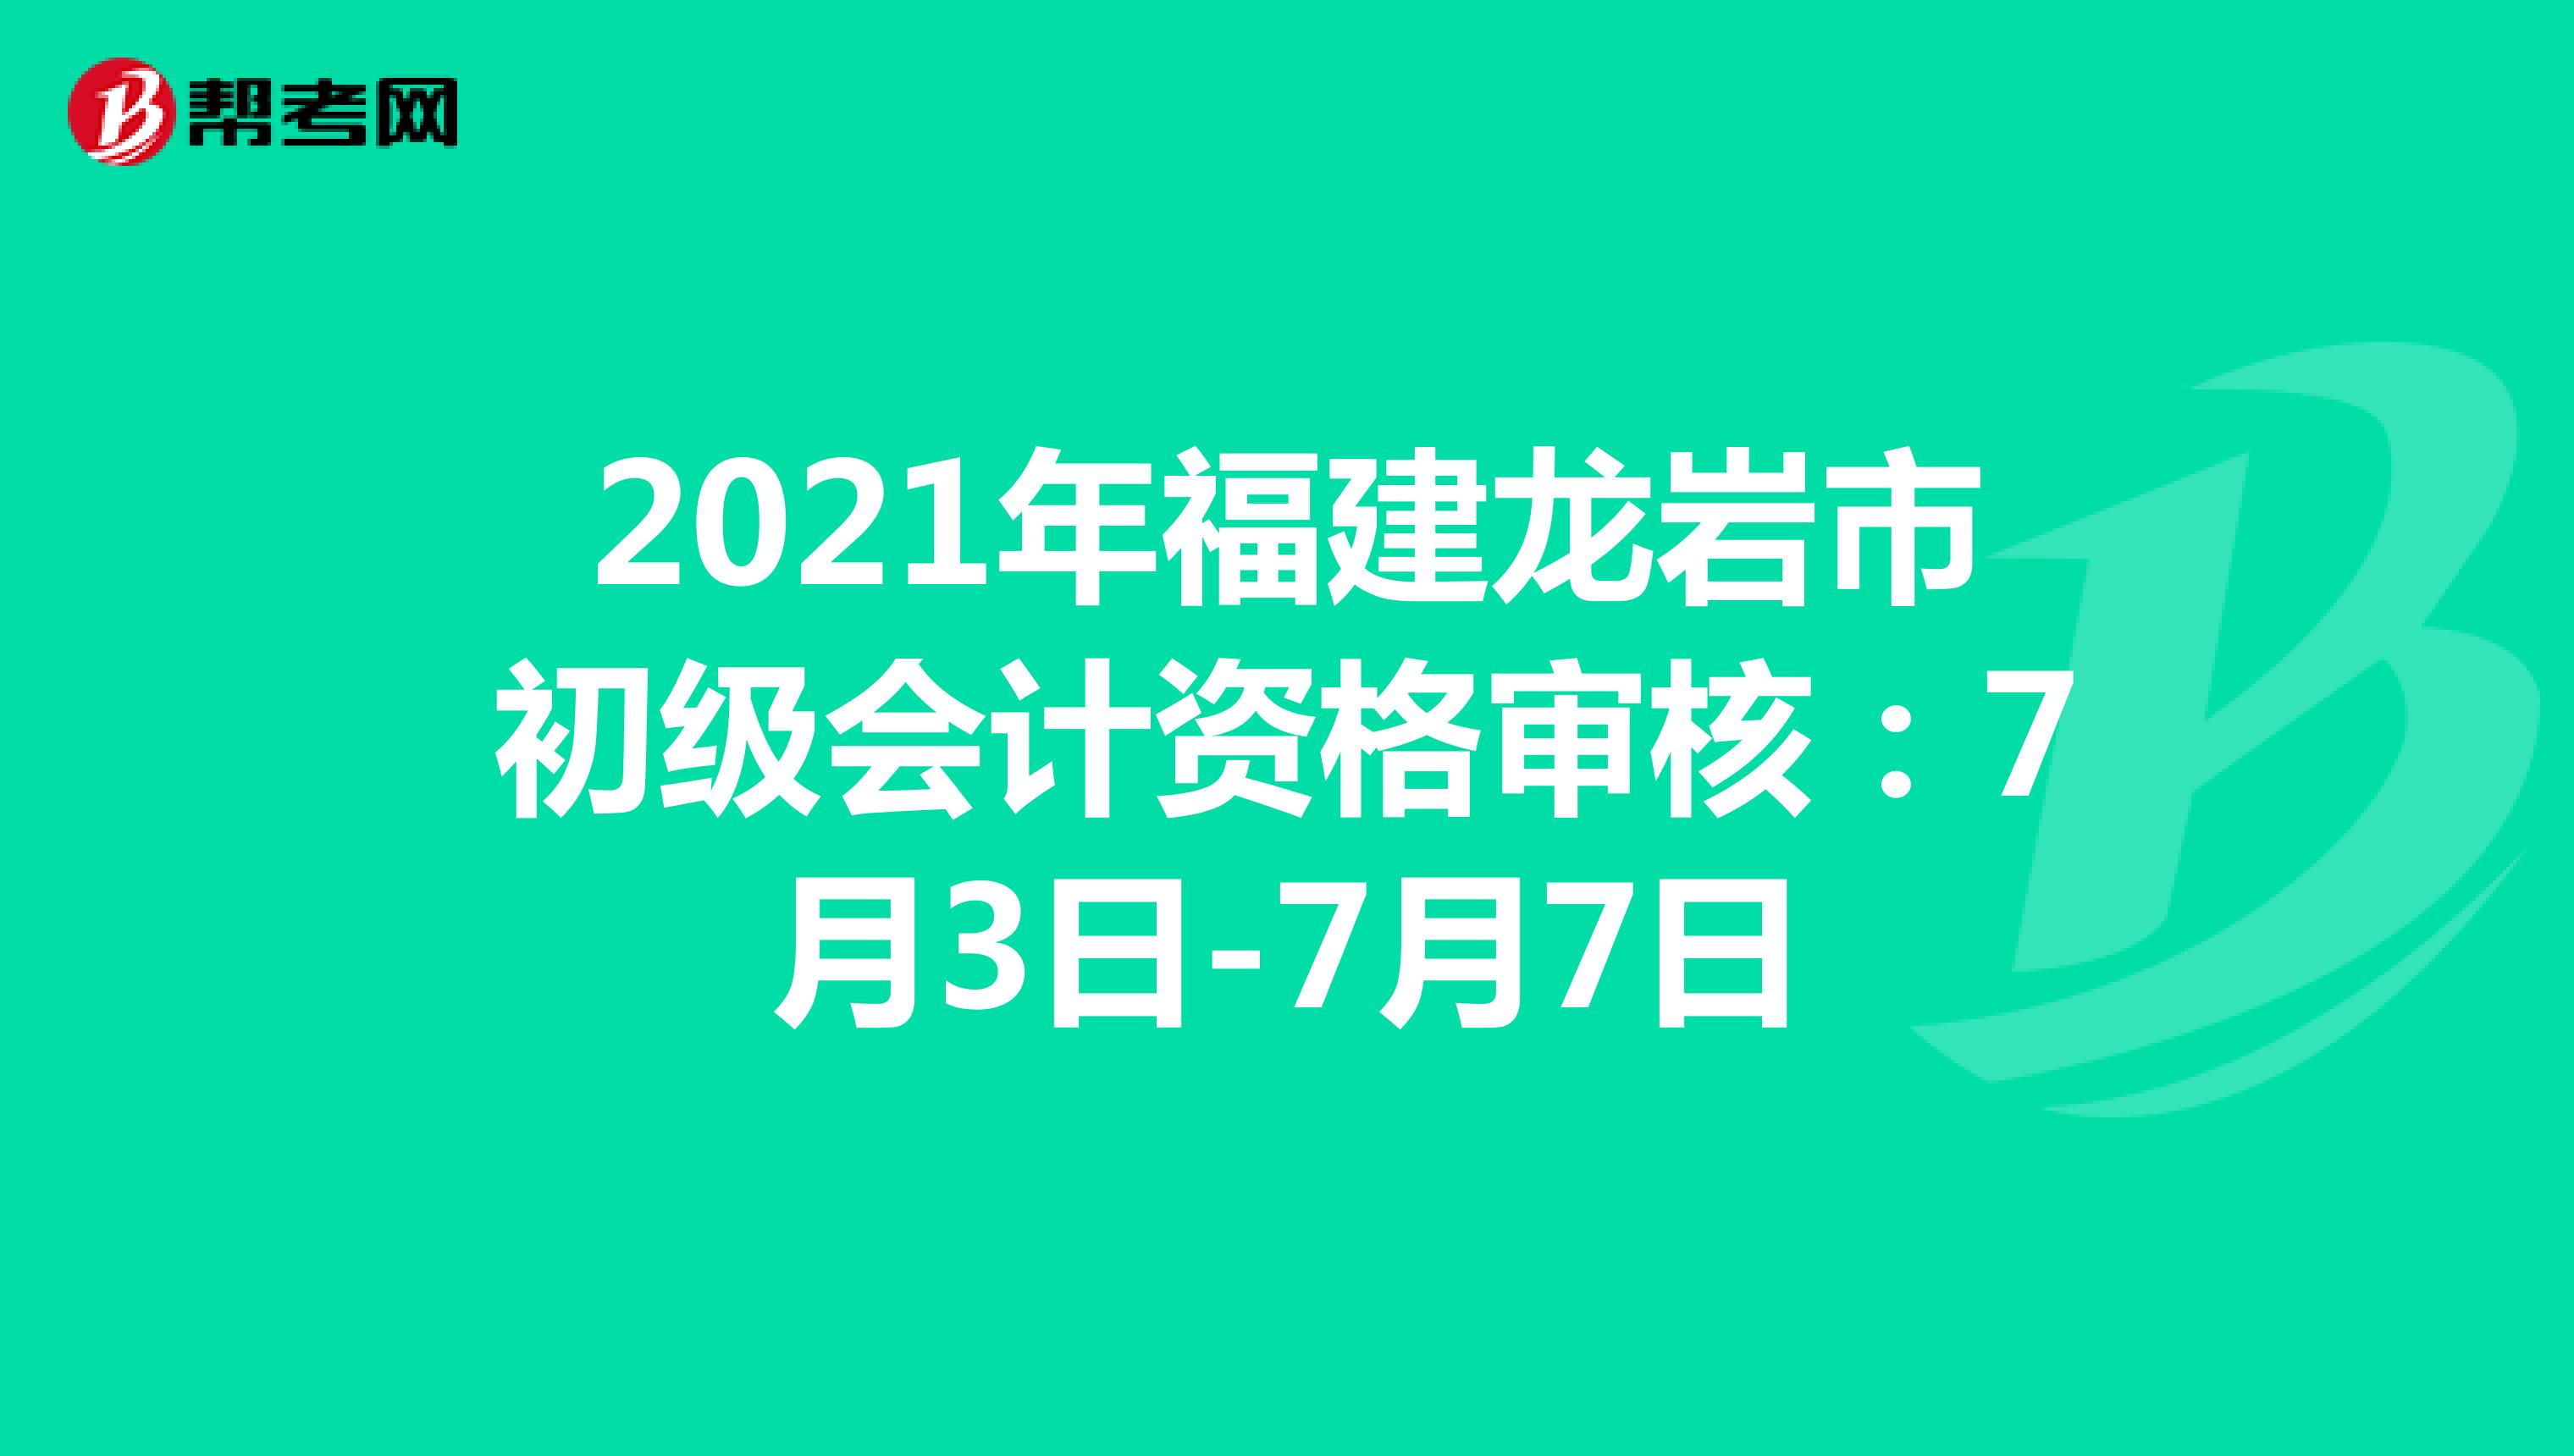 2021年福建龙岩市初级会计资格审核：7月3日-7月7日